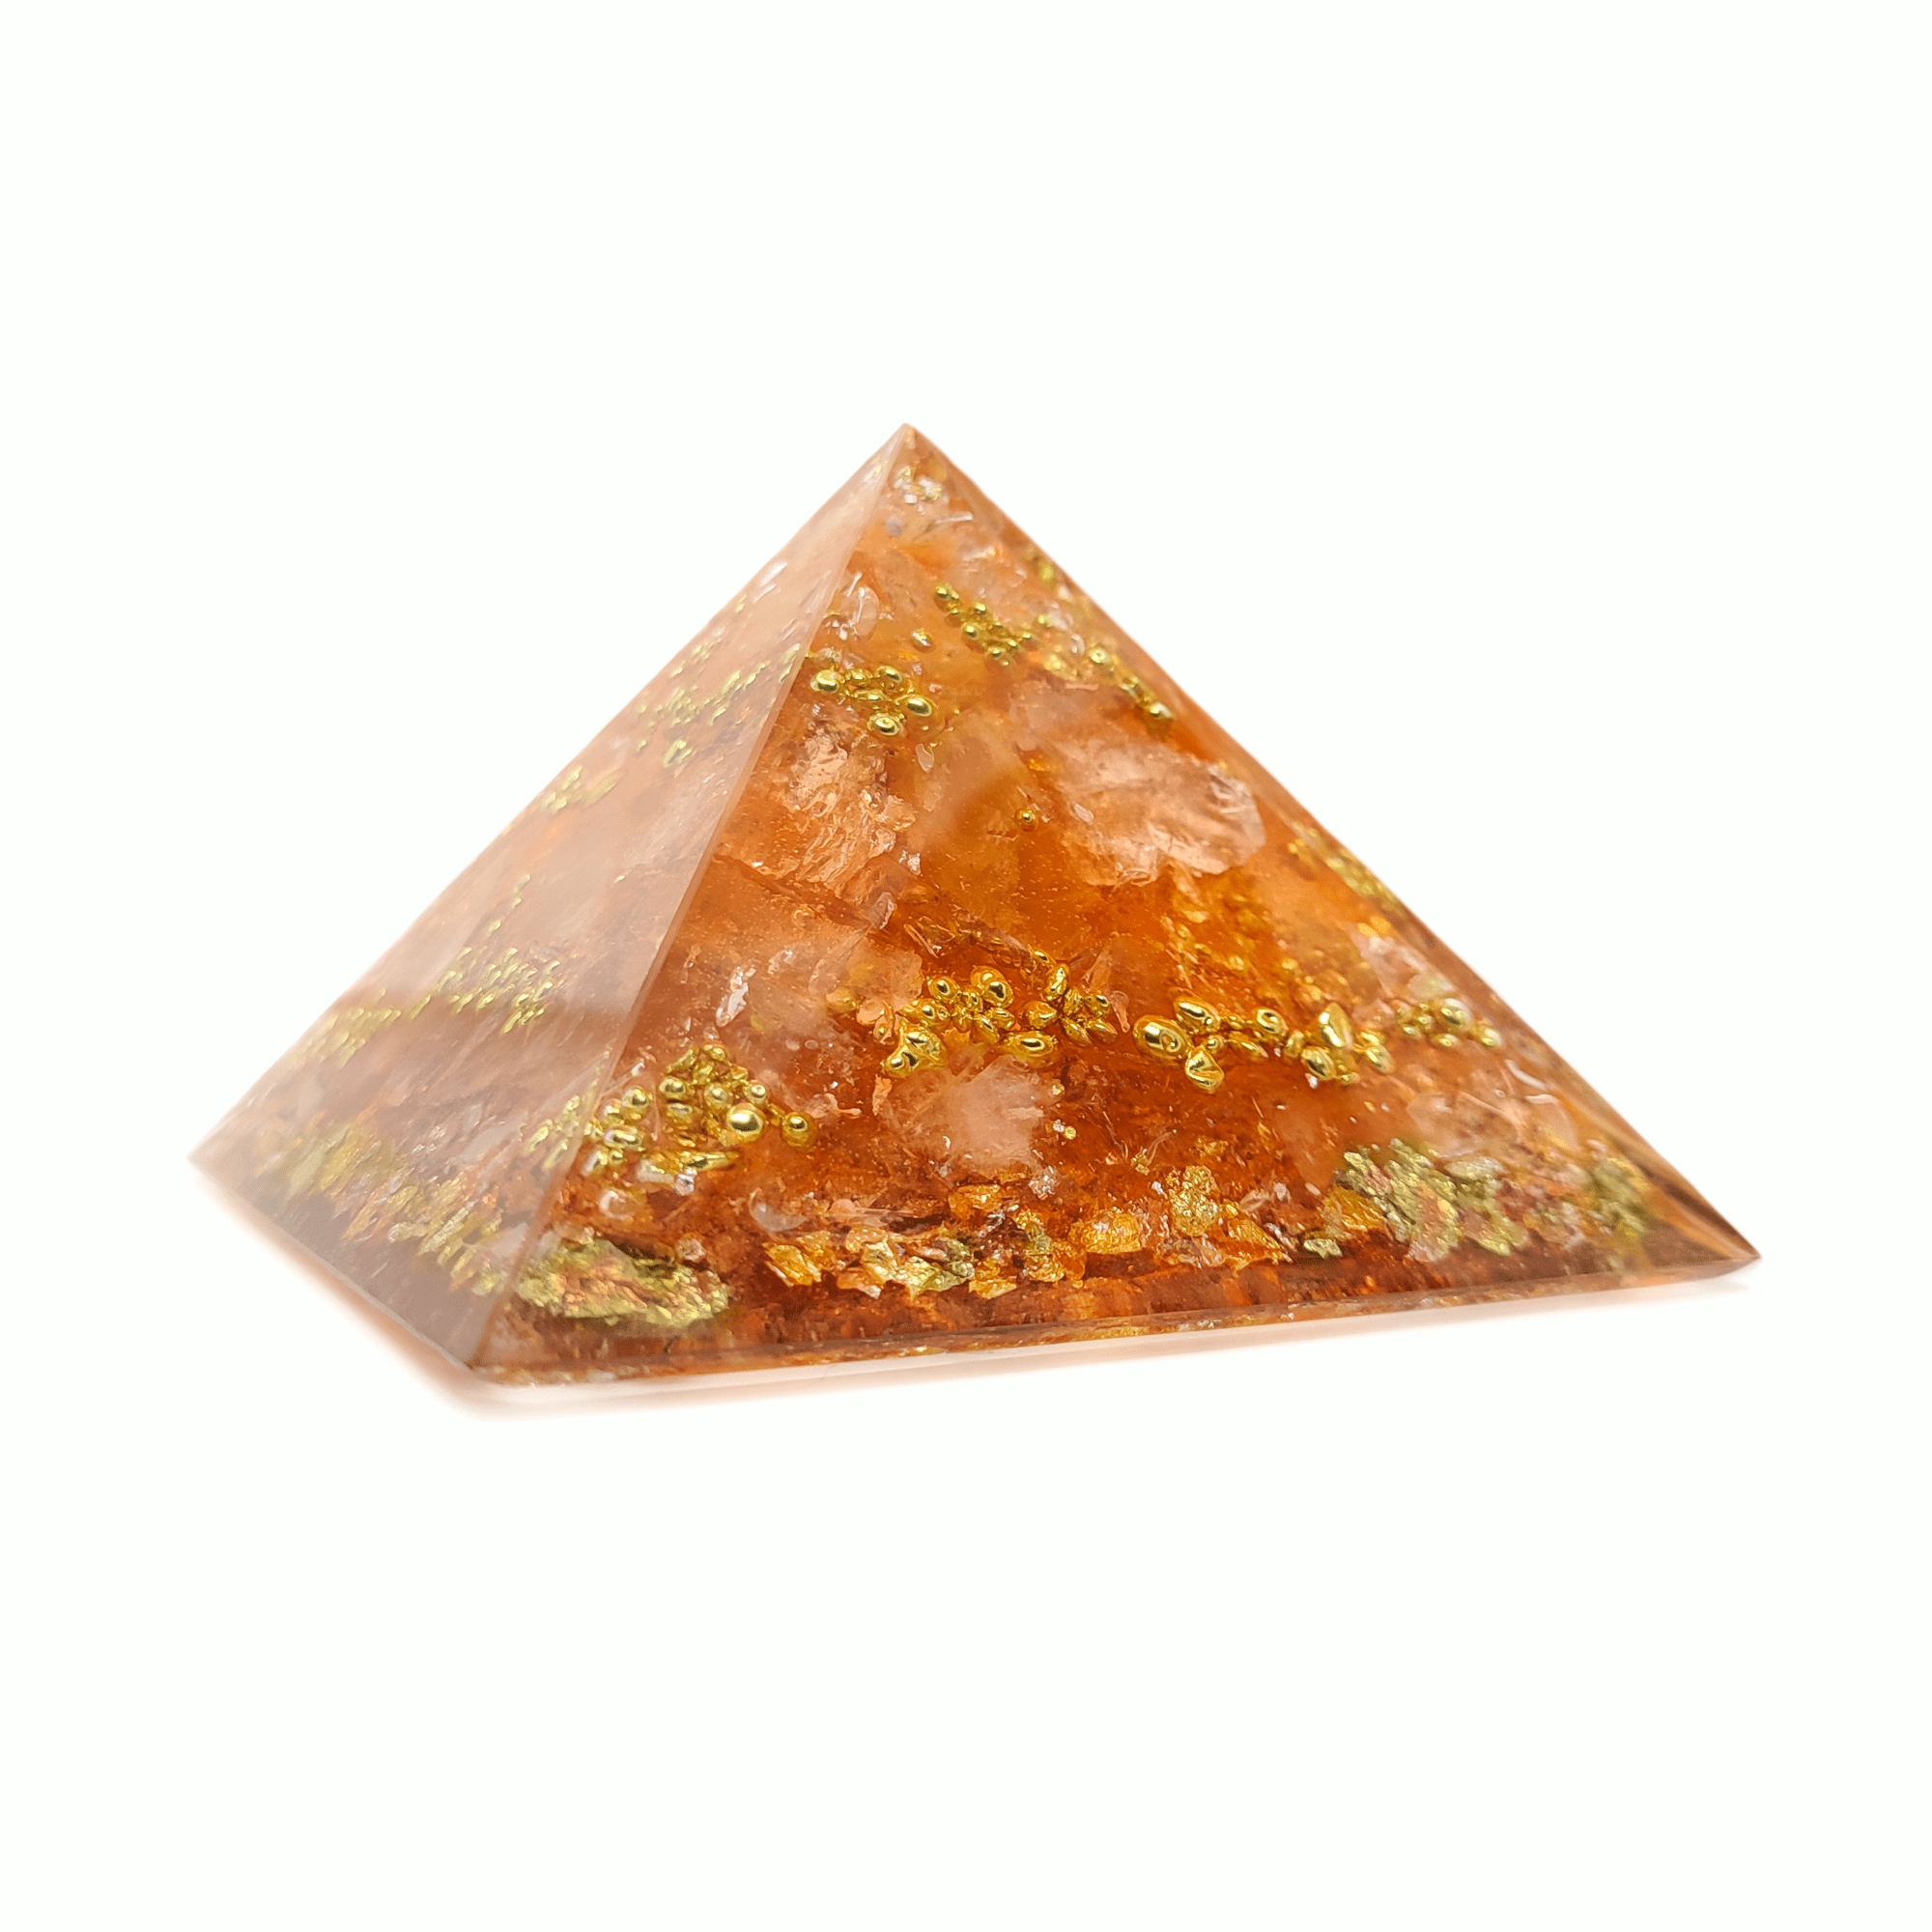 Orangene Orgonit Pyramide aus Edelsteinen wie Bergkristall, Herkimer Diamant & Karneol. Die satte Farbe wird durch goldene Metall Elemente ersetzt.